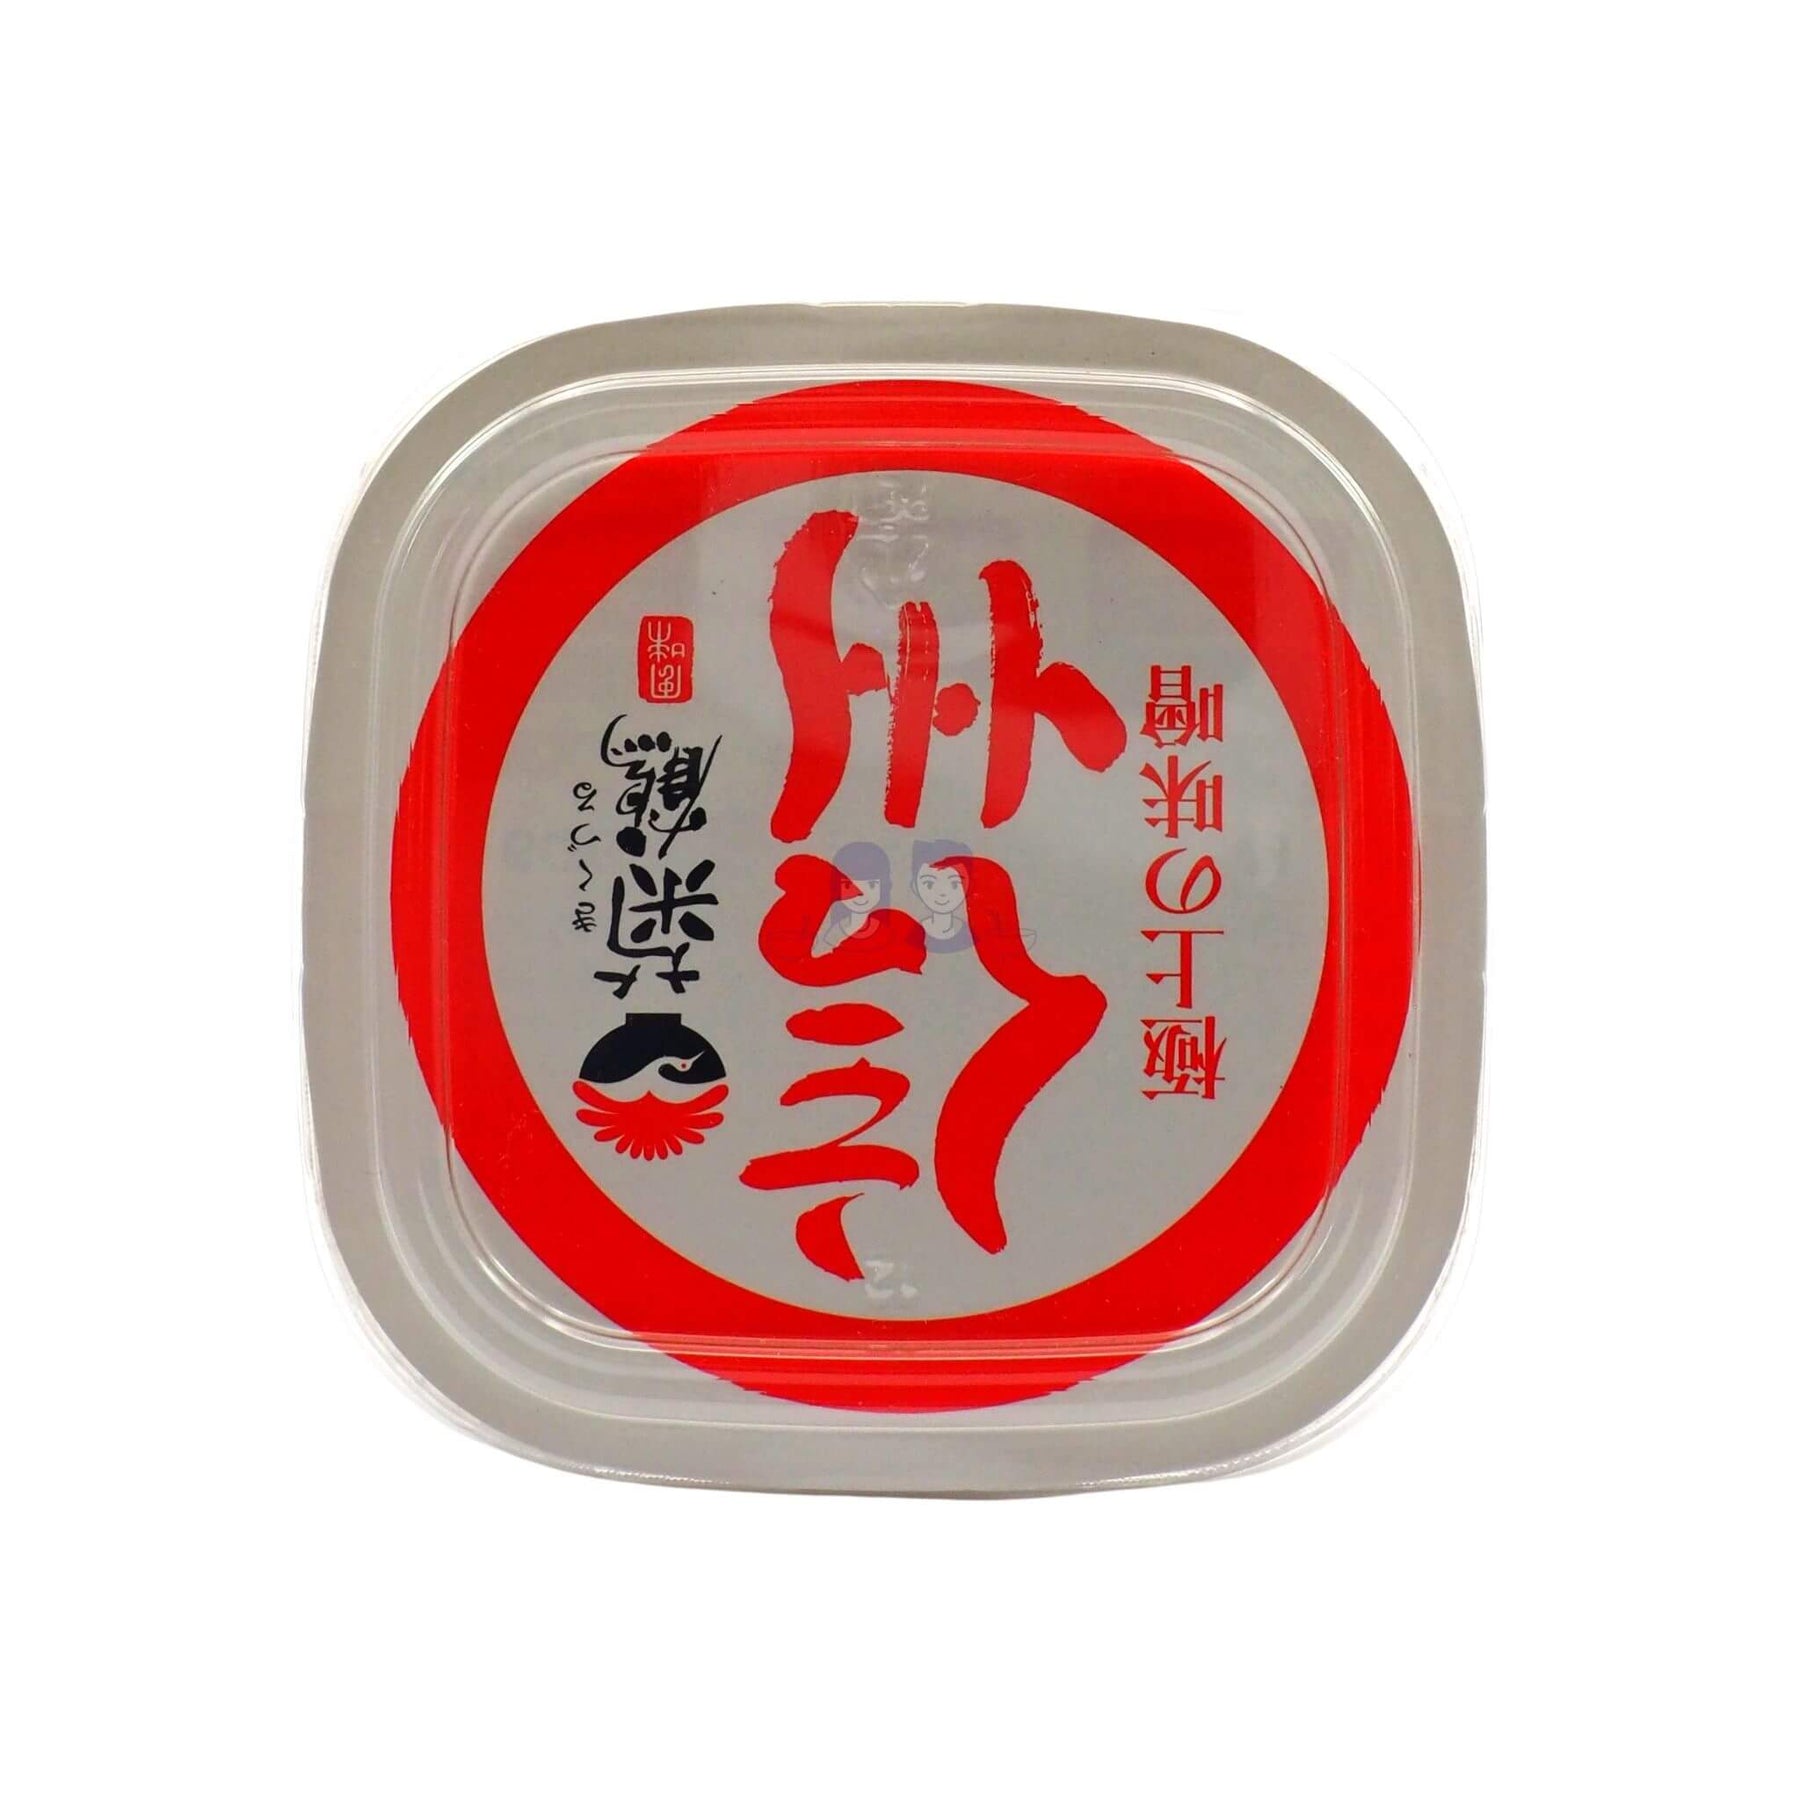 Yutaka Organic Miso Paste 300 g (Pack of 3)